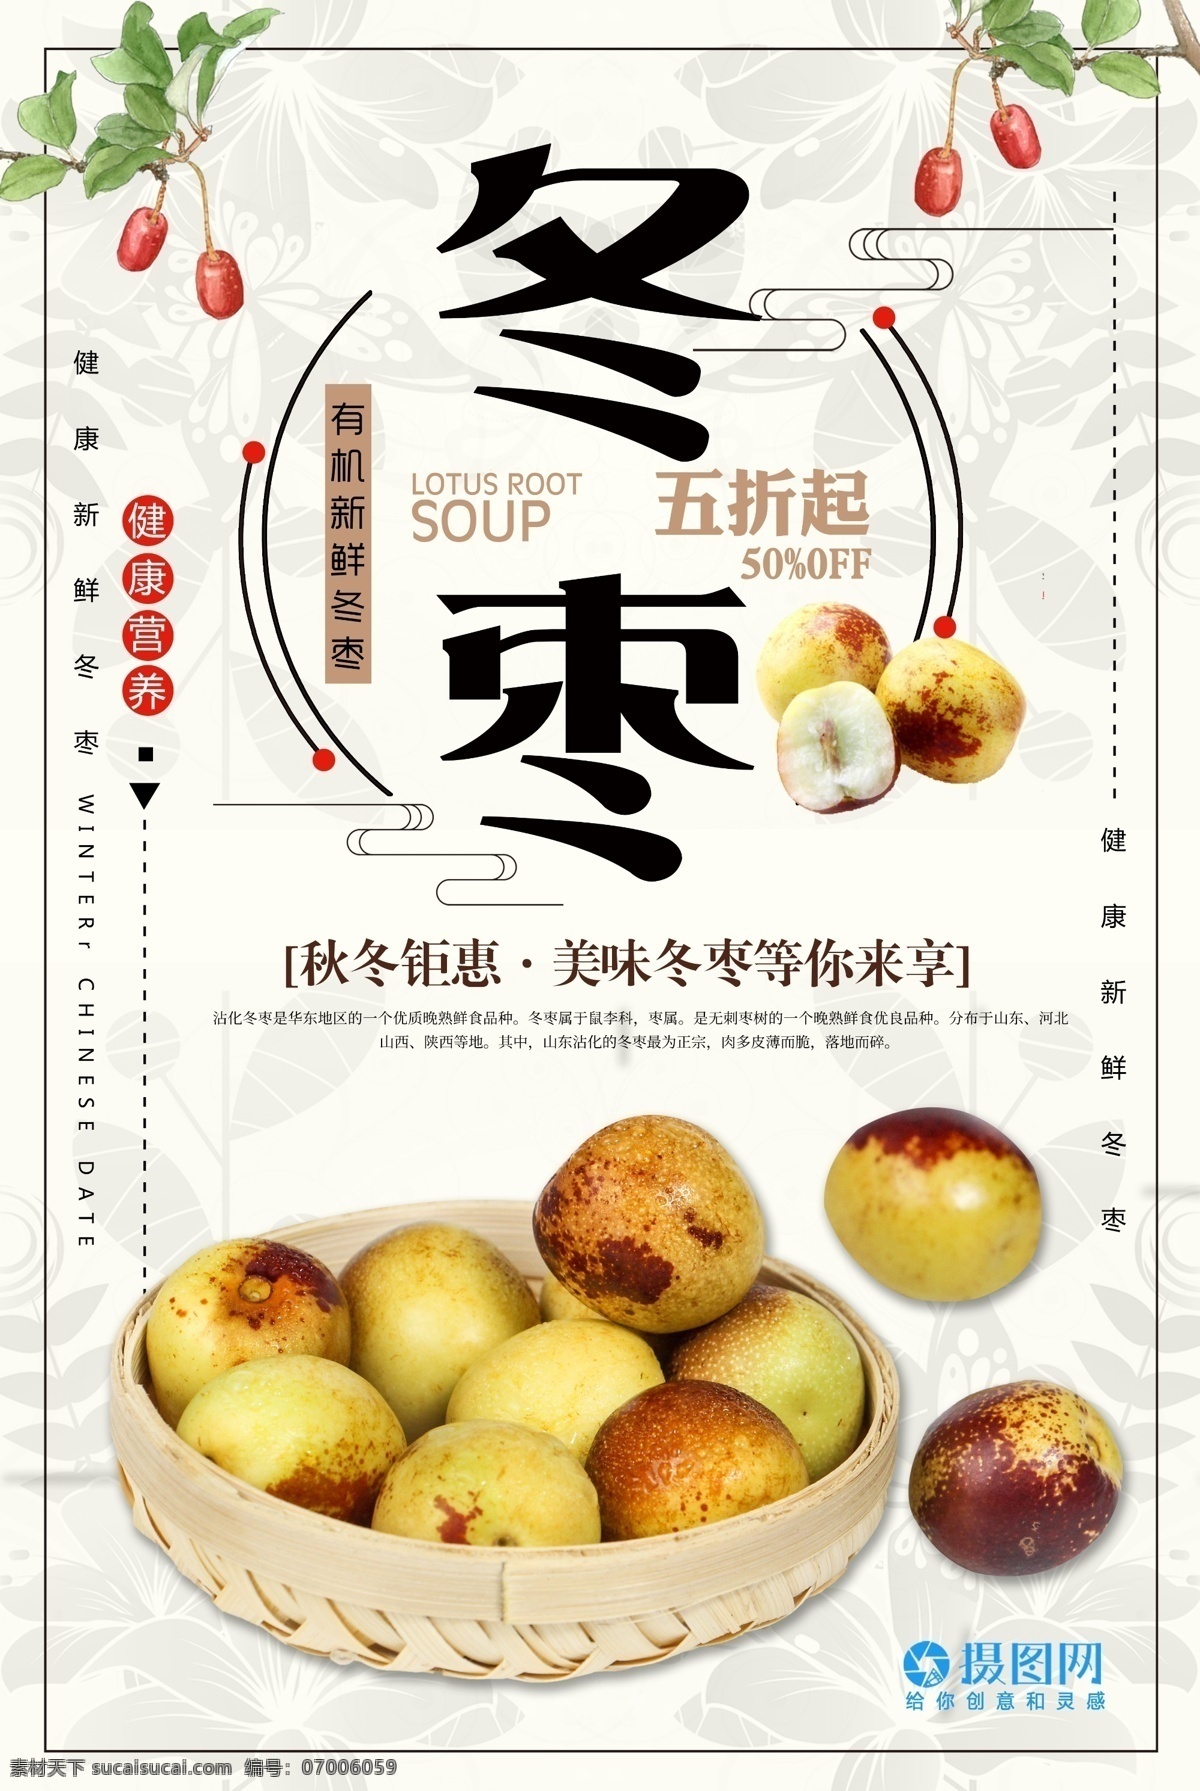 冬枣 促销 美食 海报 枣 水果 枣子 冬季 健康 绿色 水果海报 食物 美食海报